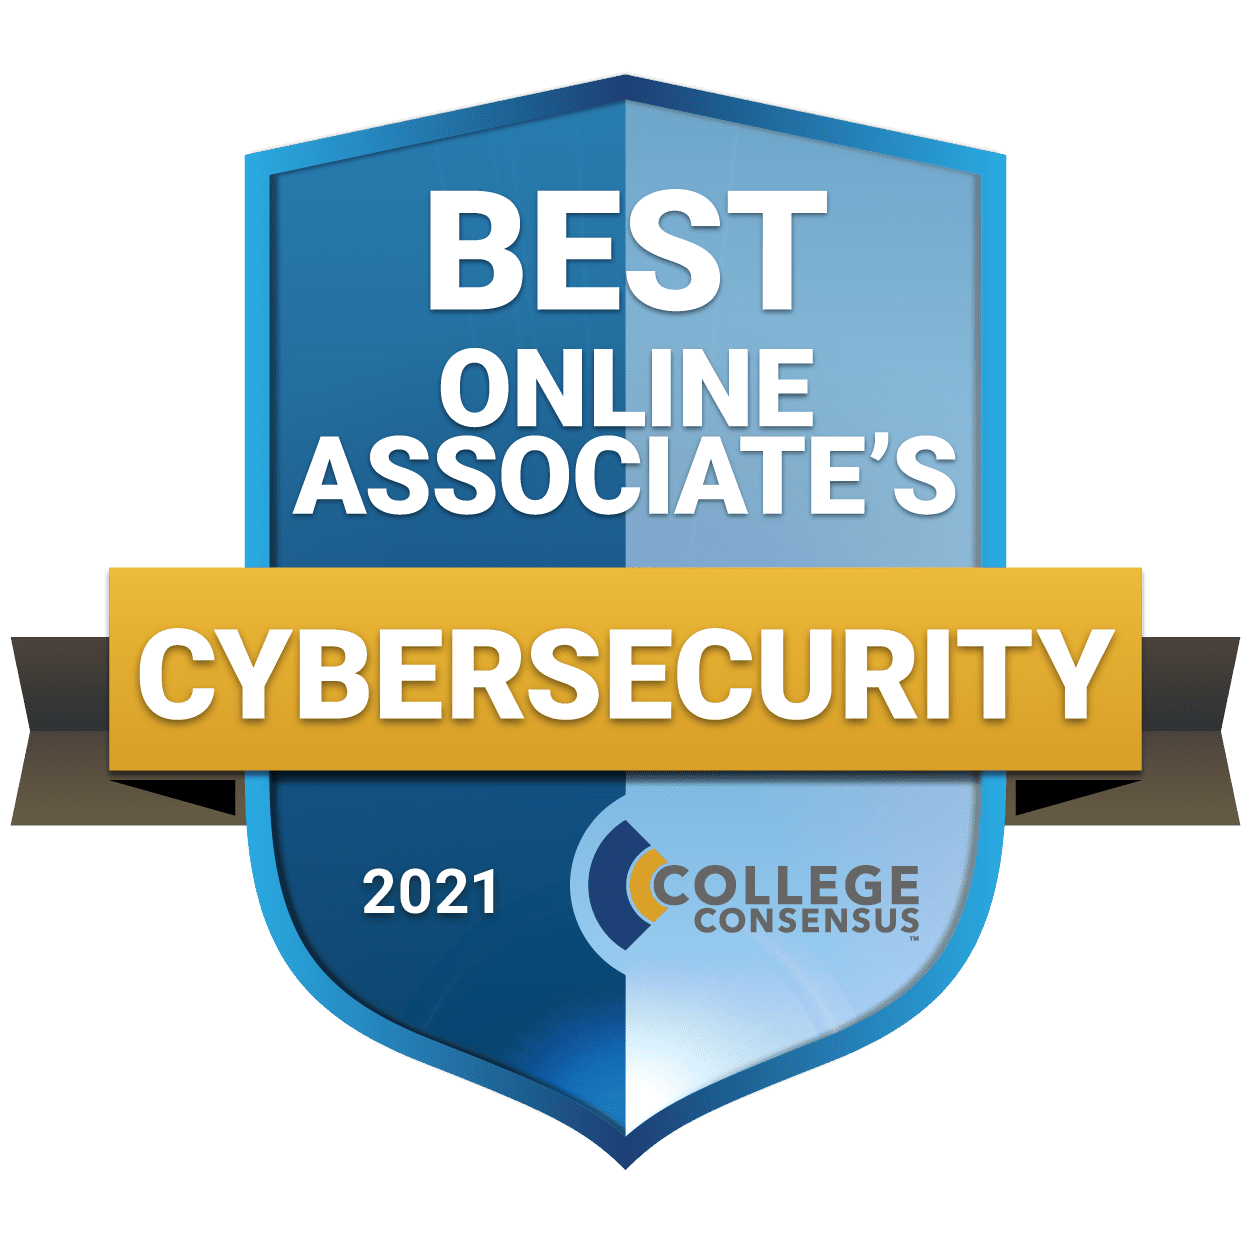 Best Online Associate’s in Cybersecurity